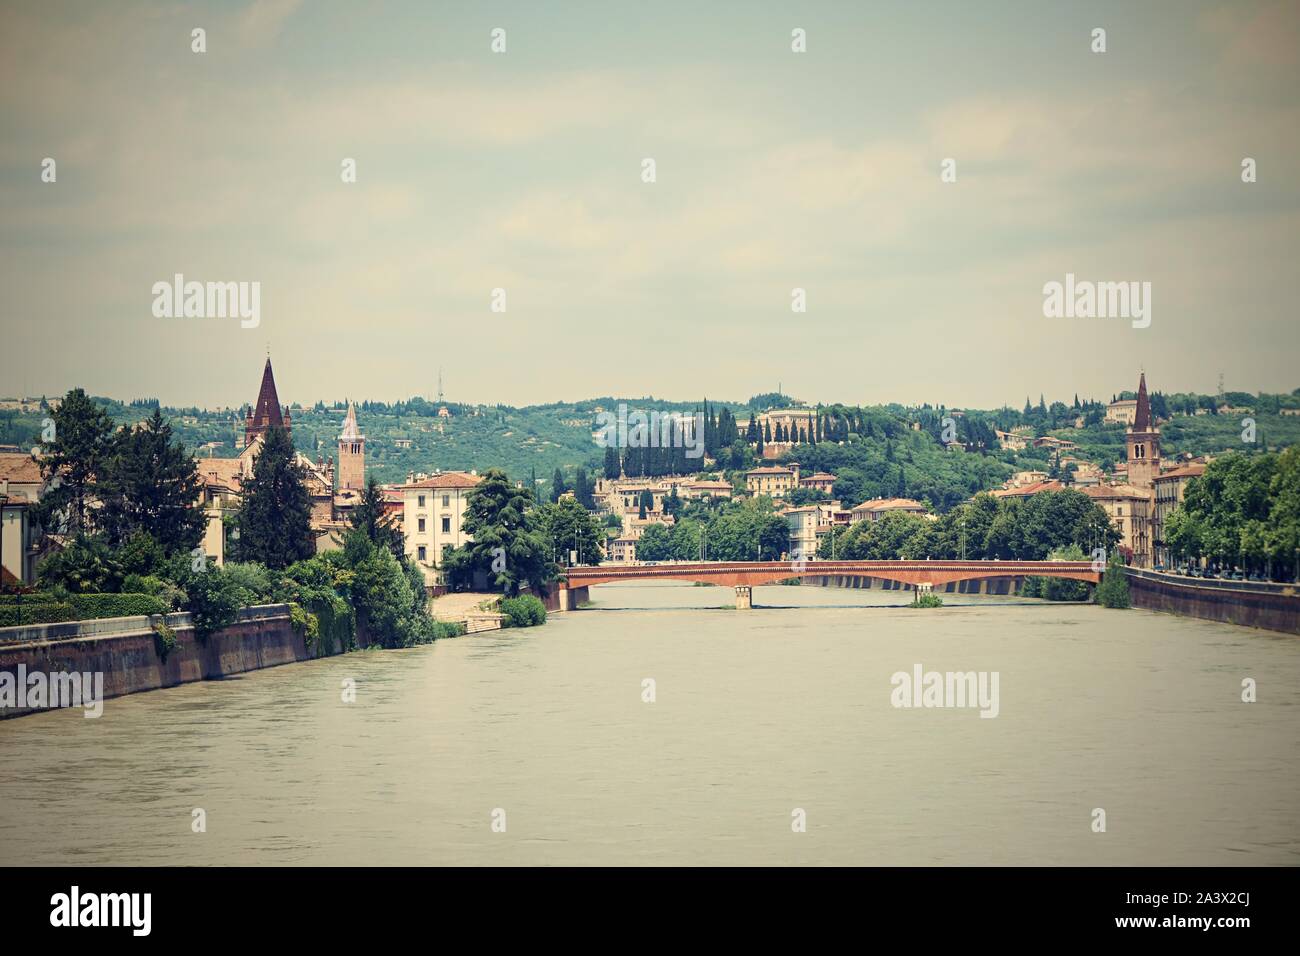 Photo horizontale avec vue sur la rivière Adige. Rivière coule à travers la ville de Vérone célèbre en Italie. Vieux Pont et plusieurs bâtiments sont visibles en arrière-plan Banque D'Images